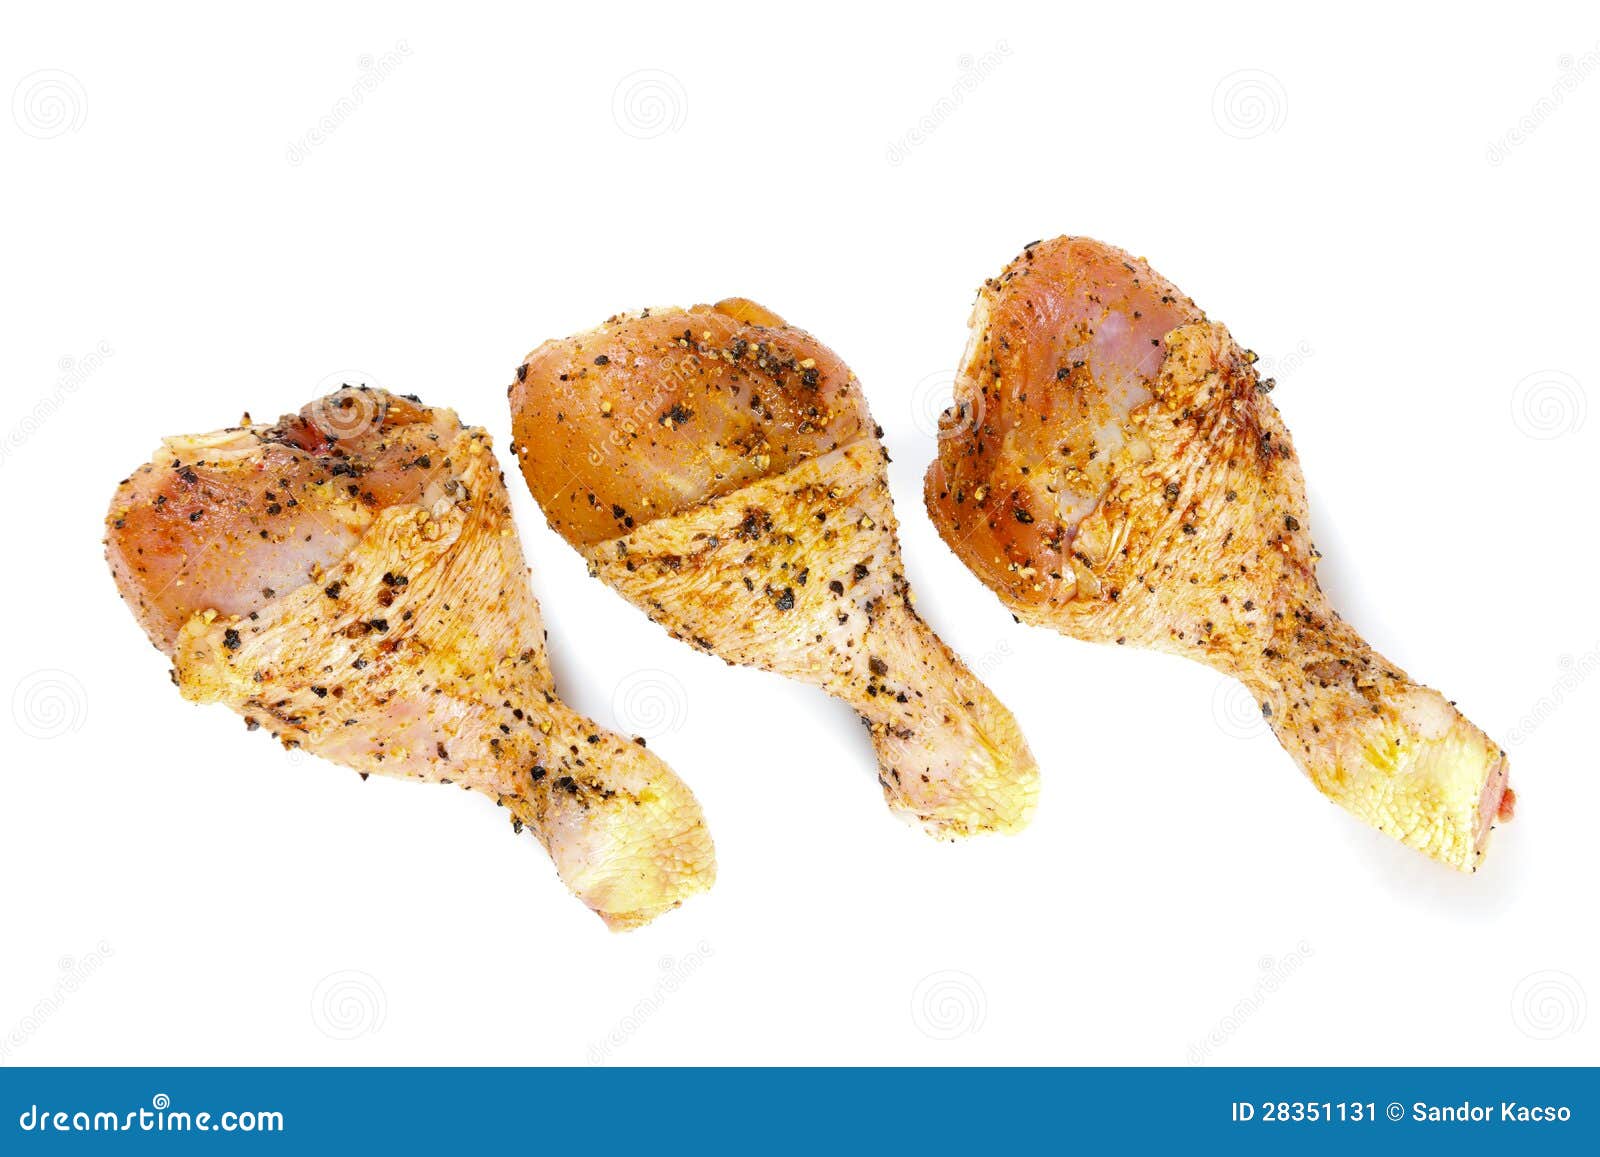 Marinierte Hühnerbeine auf Weiß. Drei rohe Hühnerbeine getrennt auf Weiß.